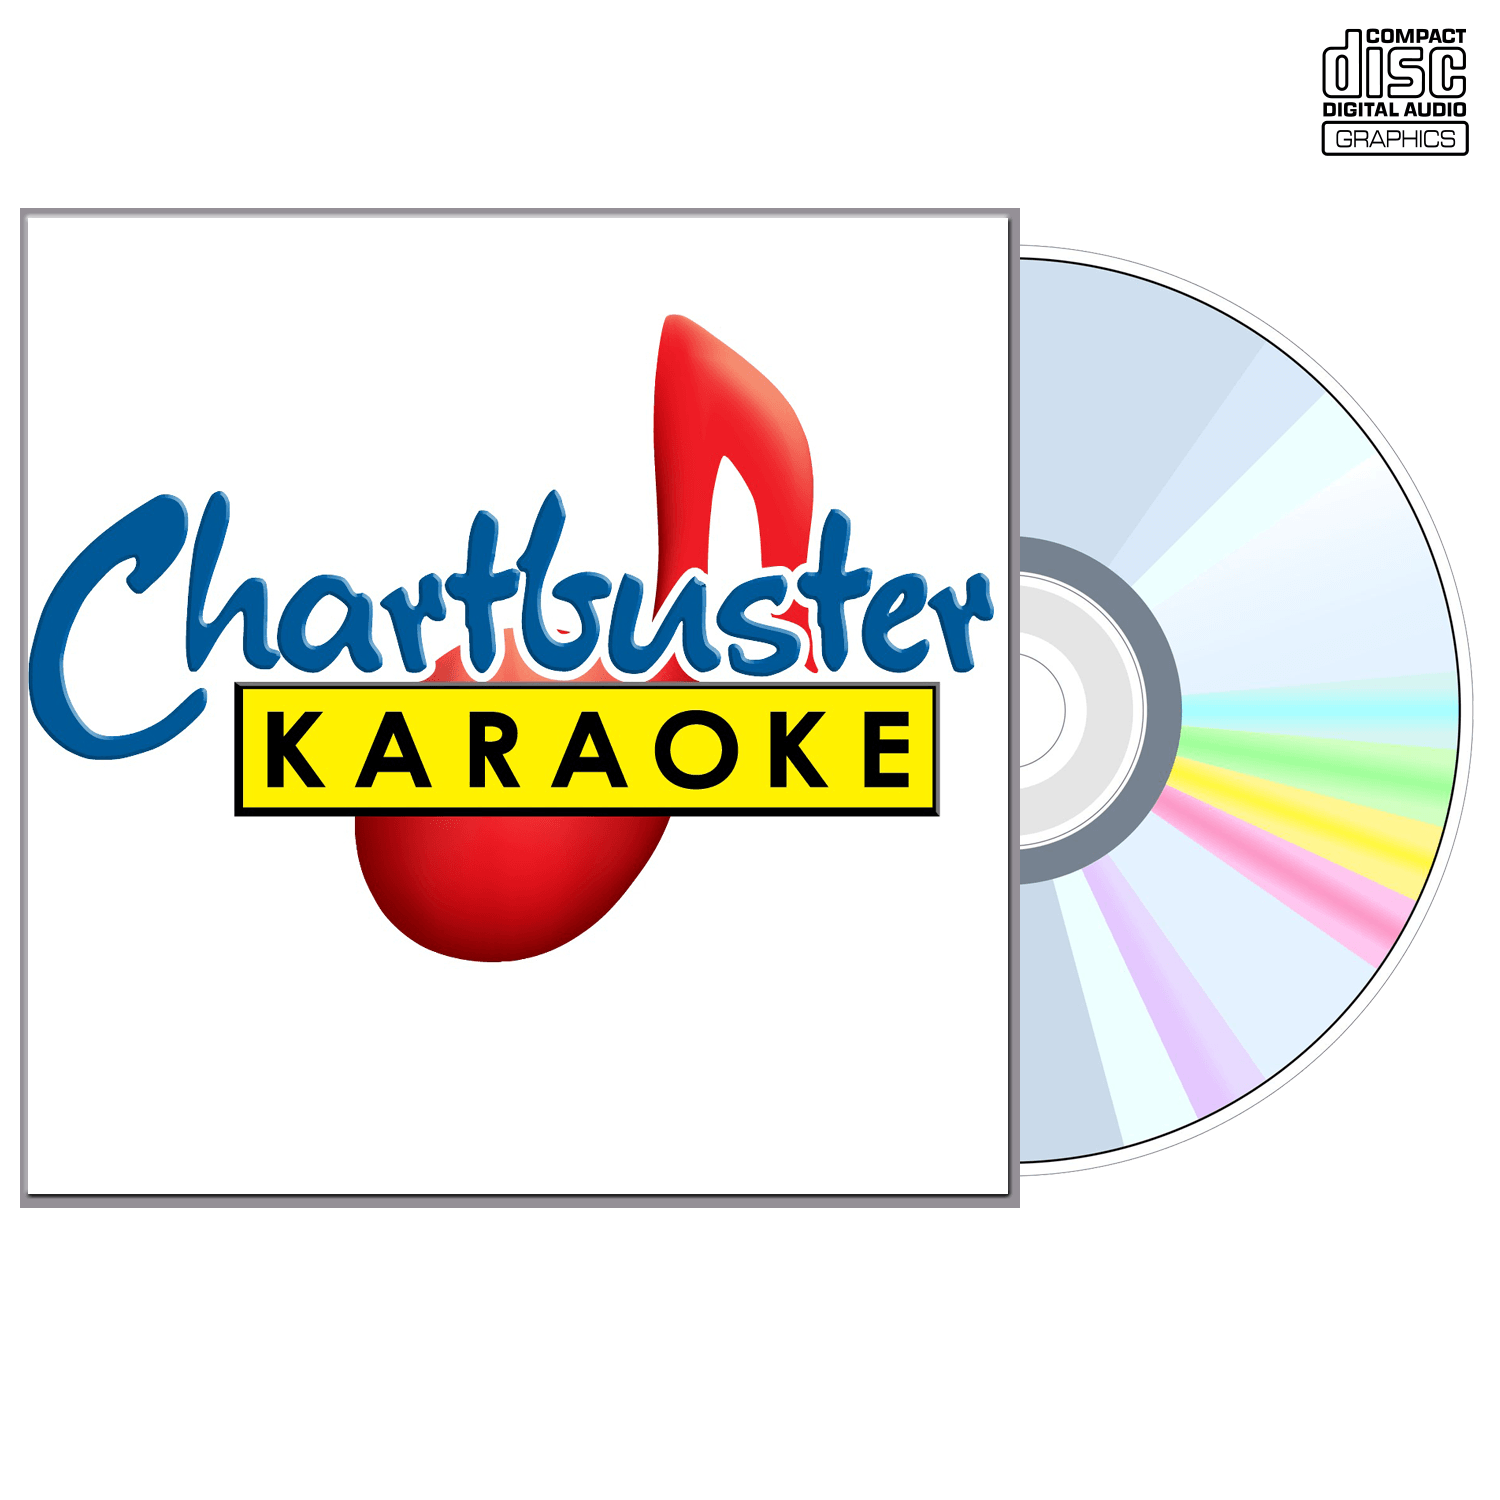 2010-2011 3 Disc Set - CD+G - Chartbuster Karaoke - Karaoke Home Entertainment